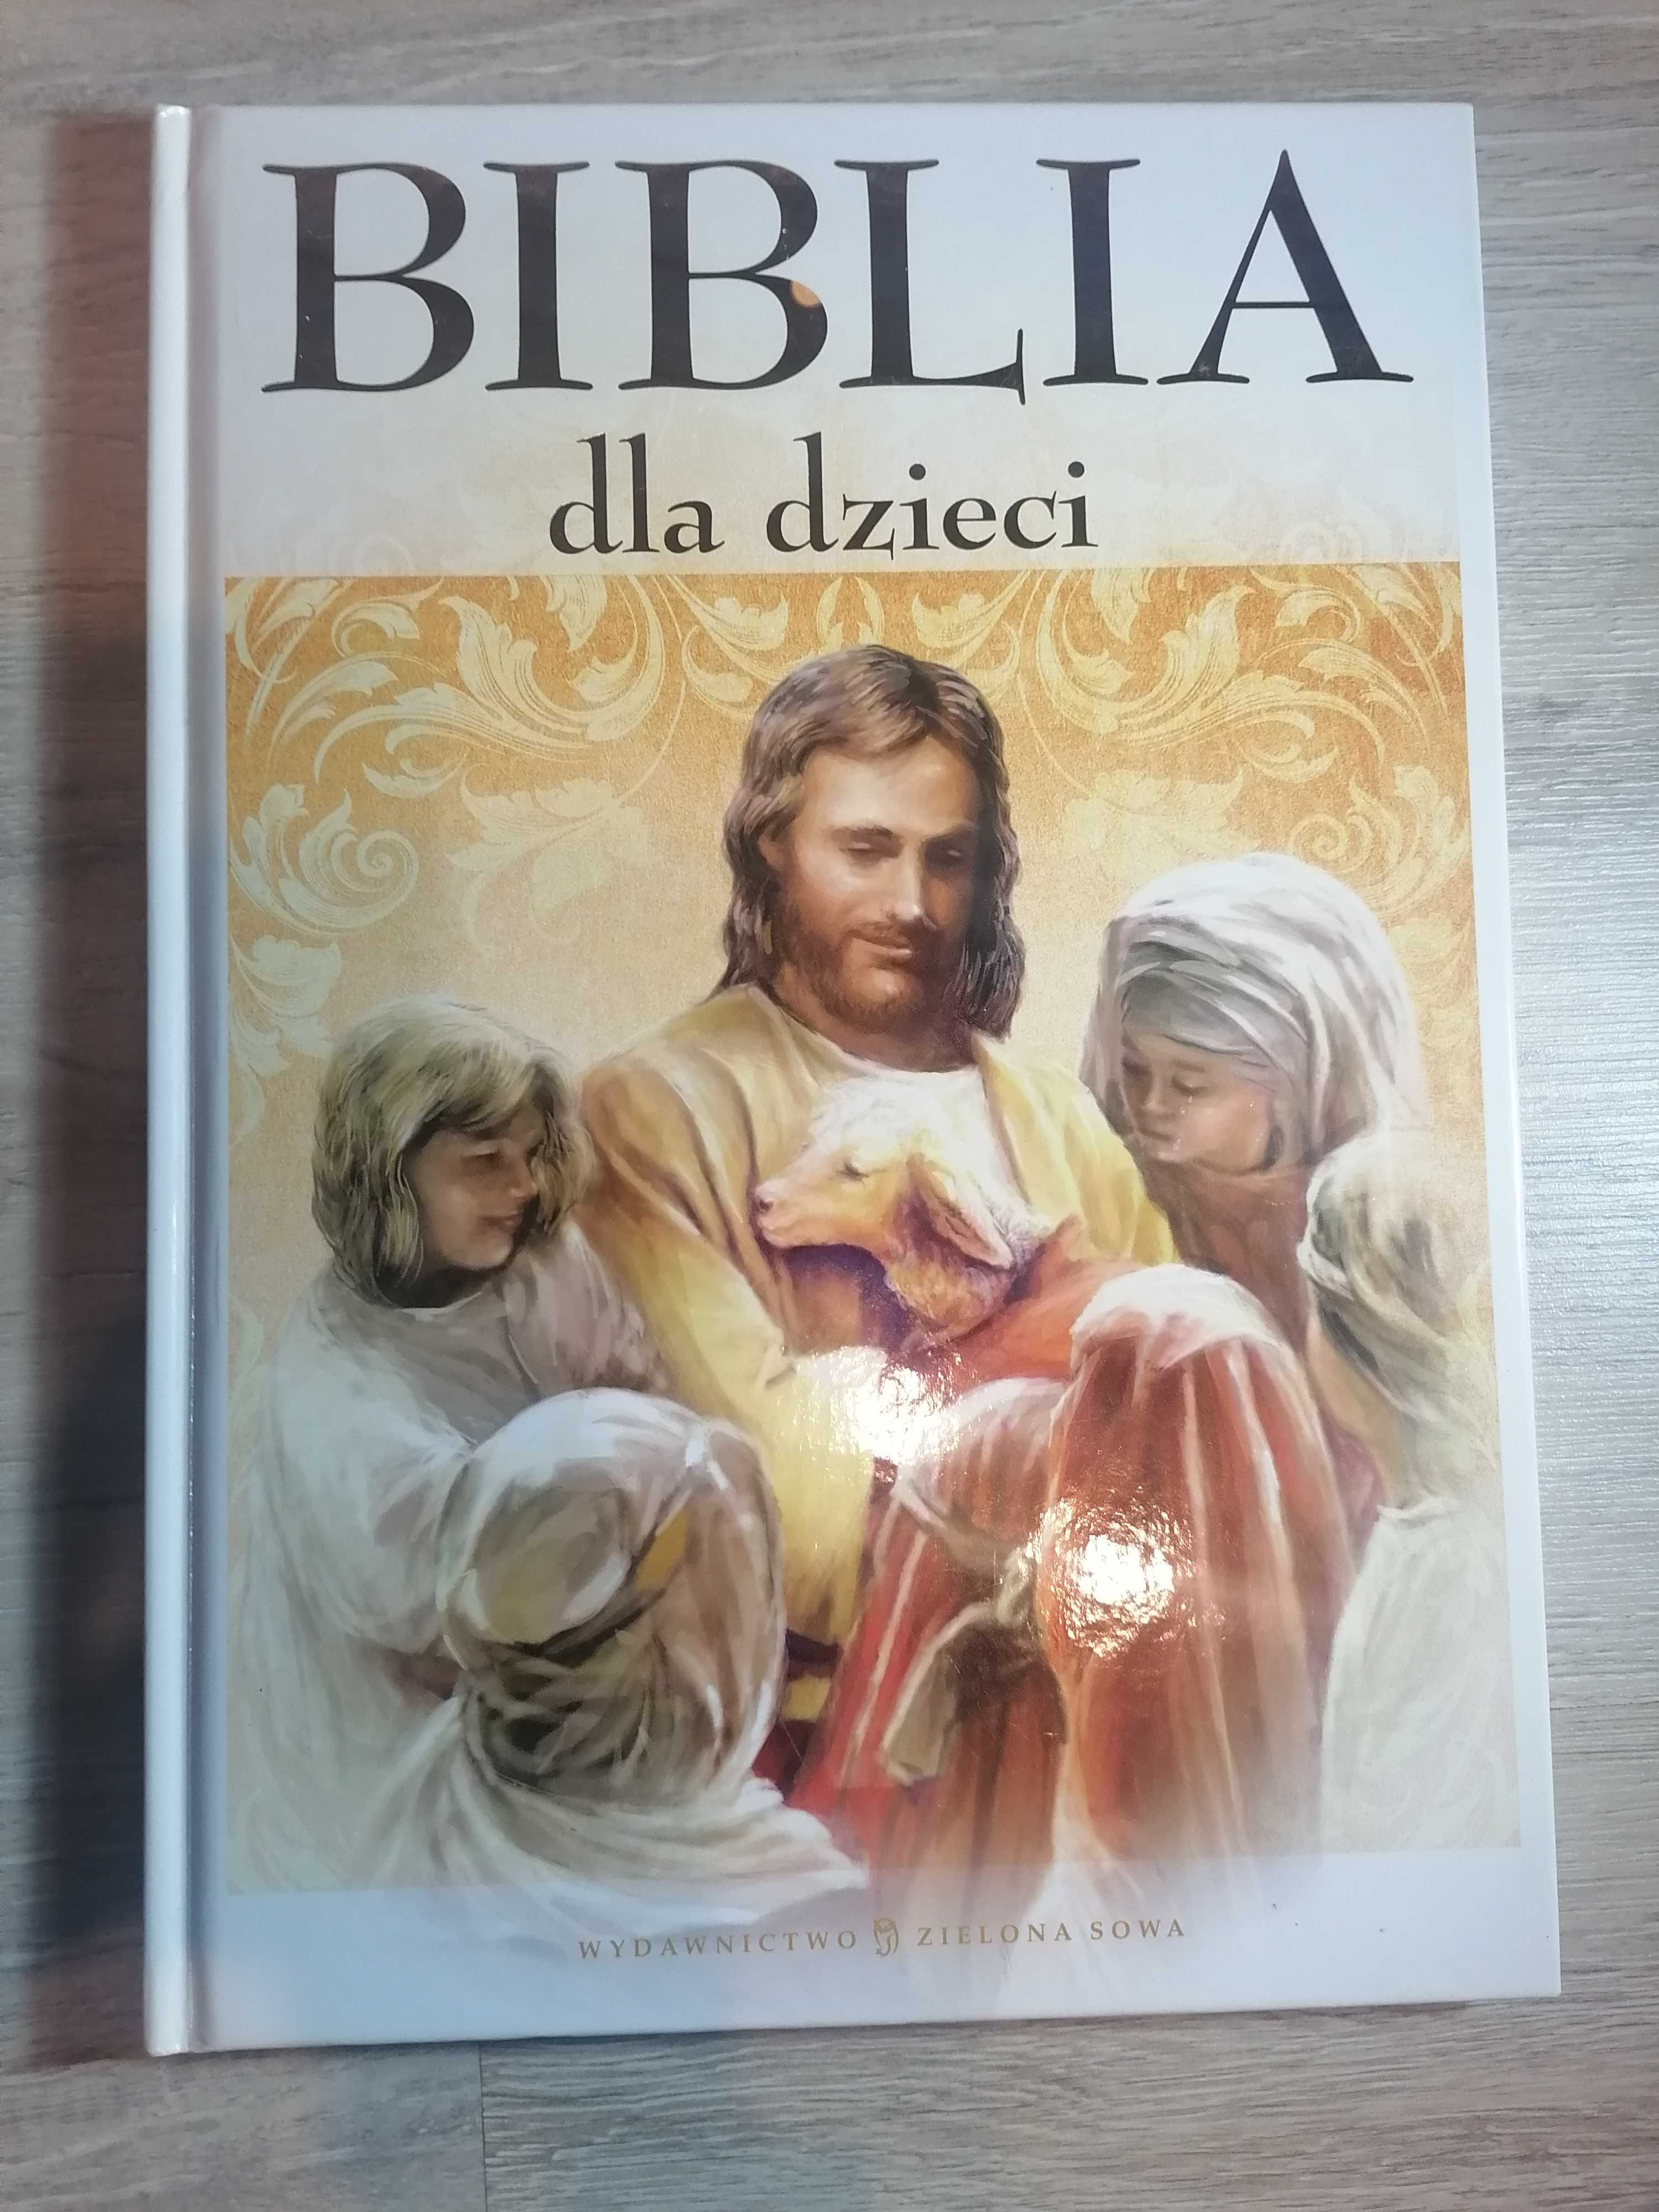 Biblia dla dzieci wyd. Zielona Sowa